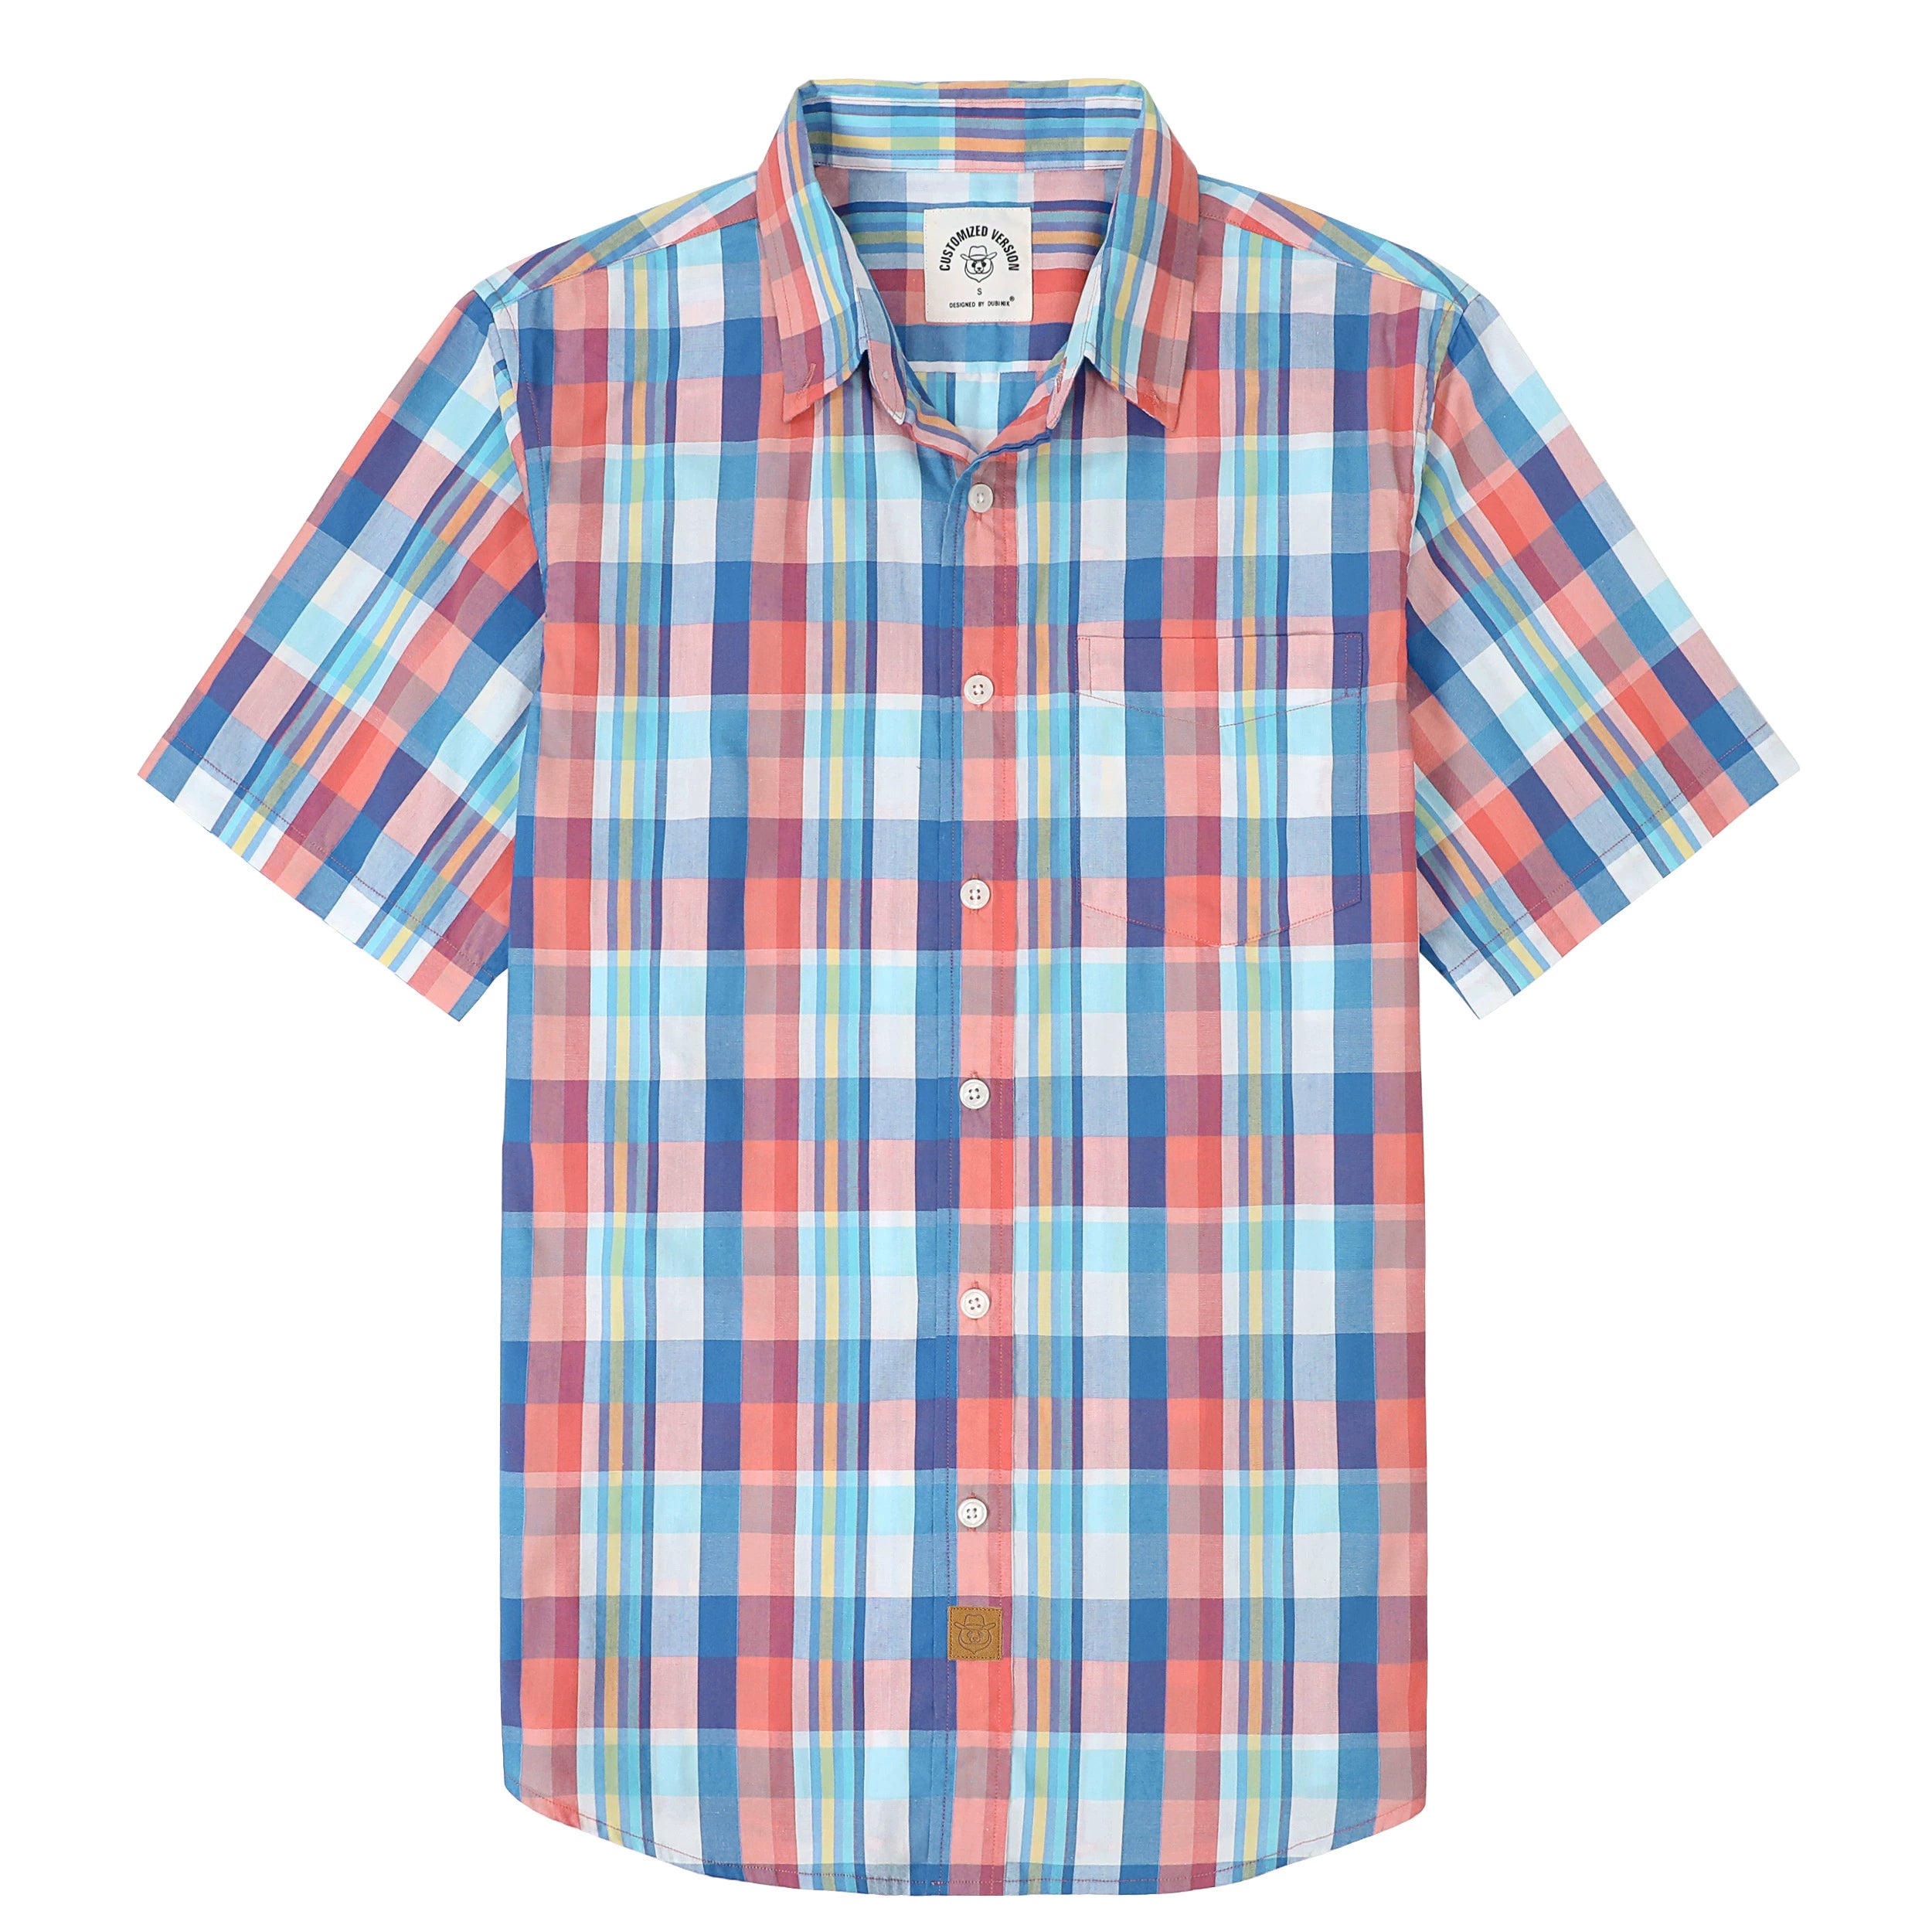 Dubinik® Mens Short Sleeve Button Down Shirts Summer Vintage Short Sleeve Button Down Men Lightweight Men's Casual Shirts#51021